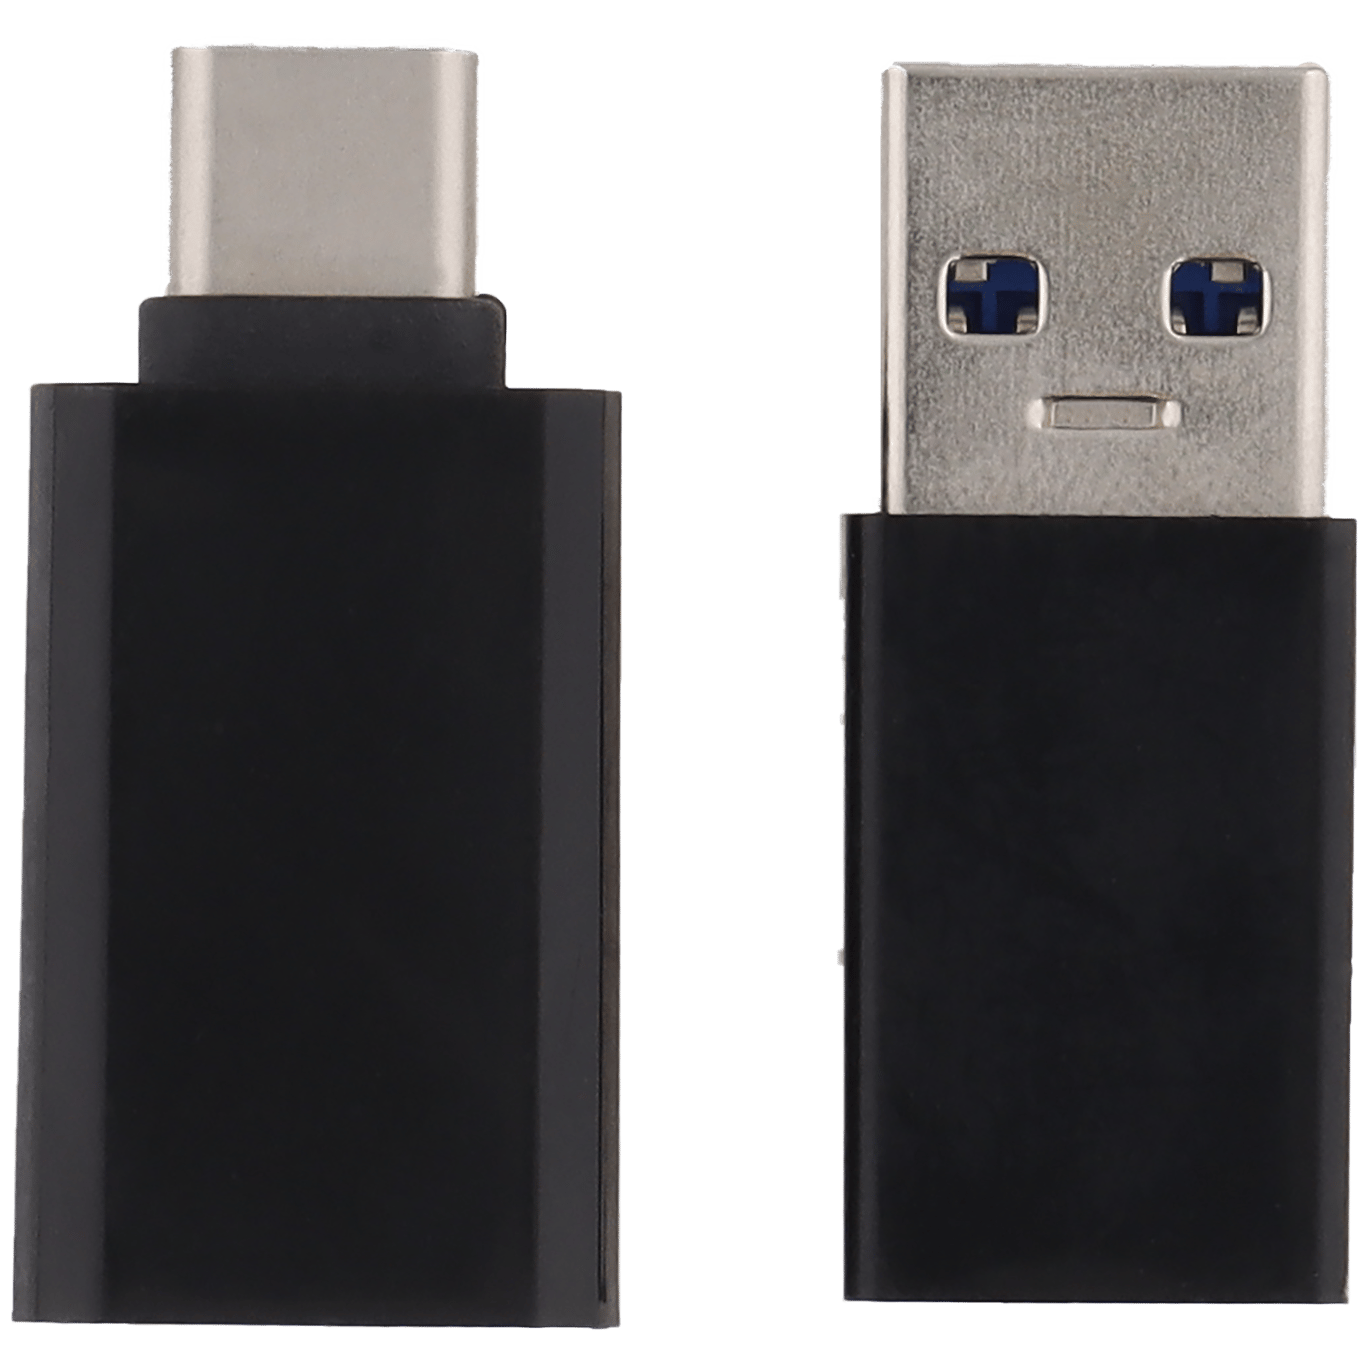 enthousiasme Zwakheid elleboog Maxxter USB type-C adapterset | Action.com